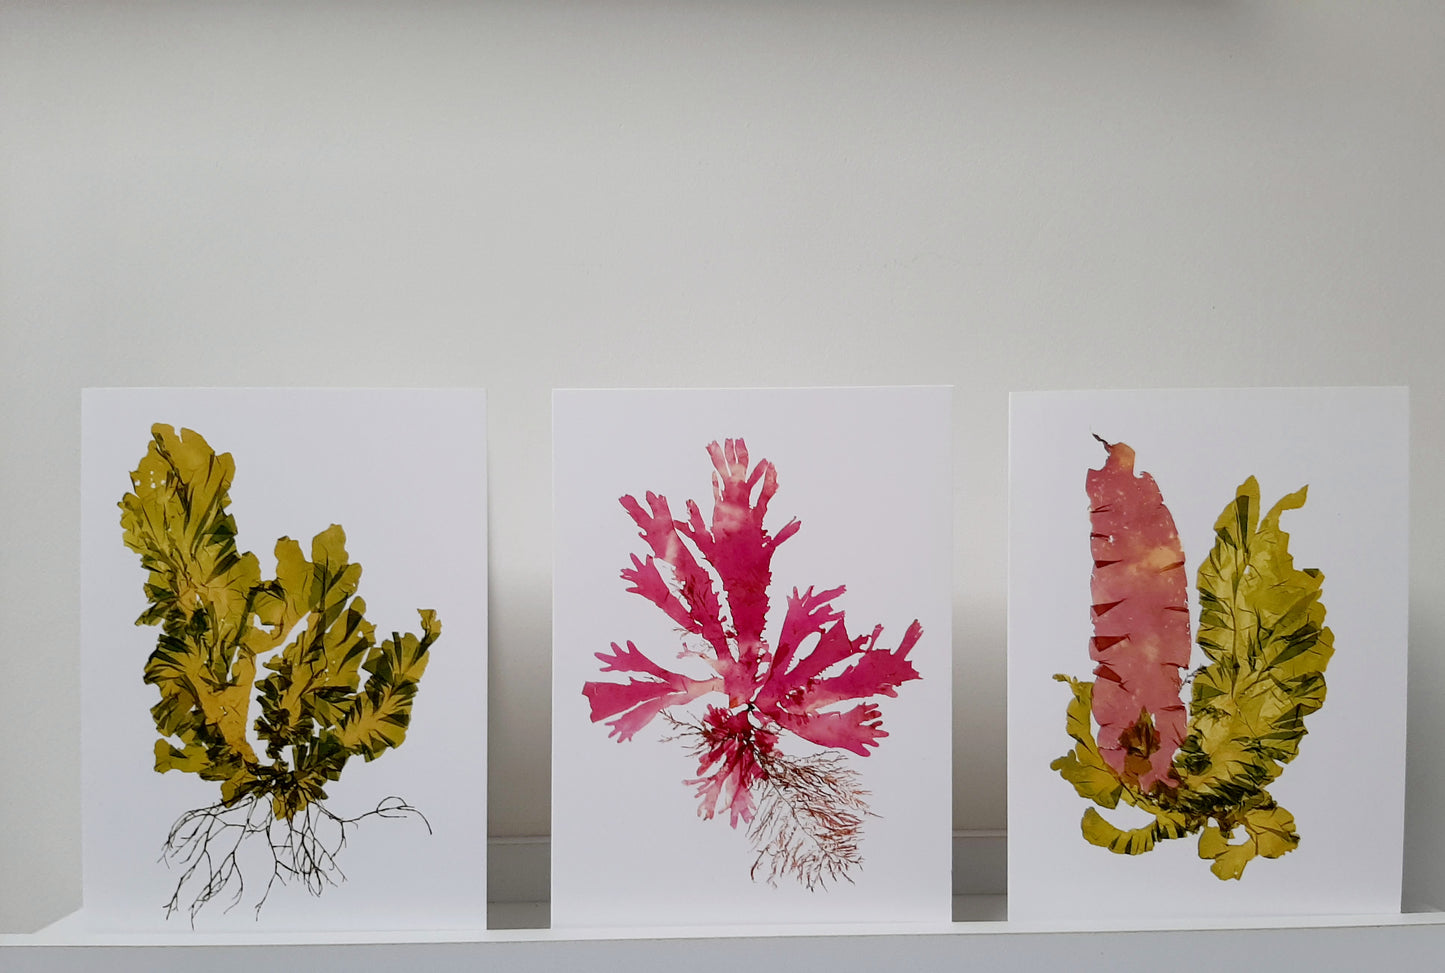 Printed Seaweed Art Card